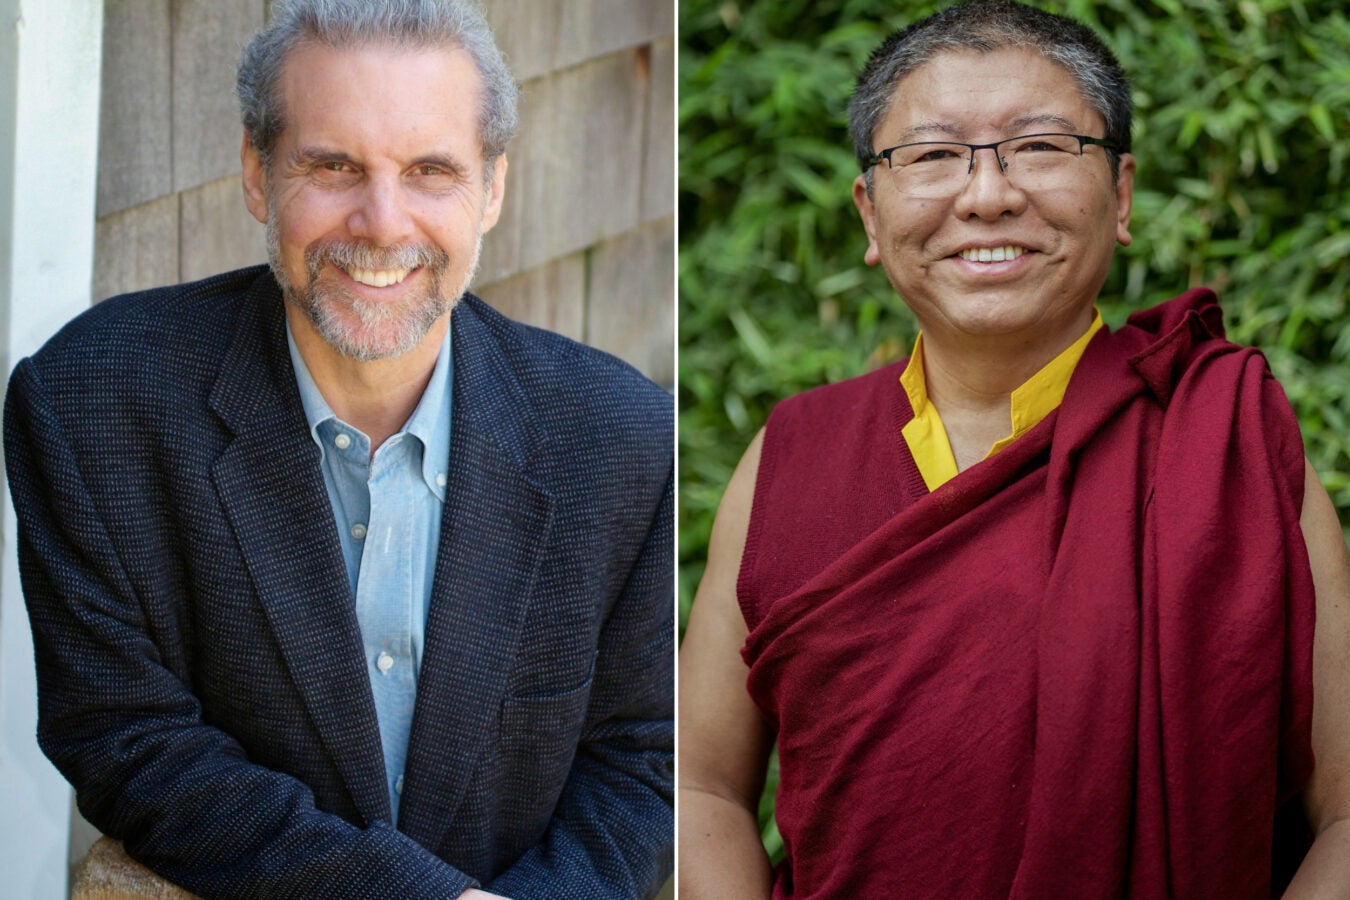 Daniel Goleman and Tsoknyi Rinpoche.